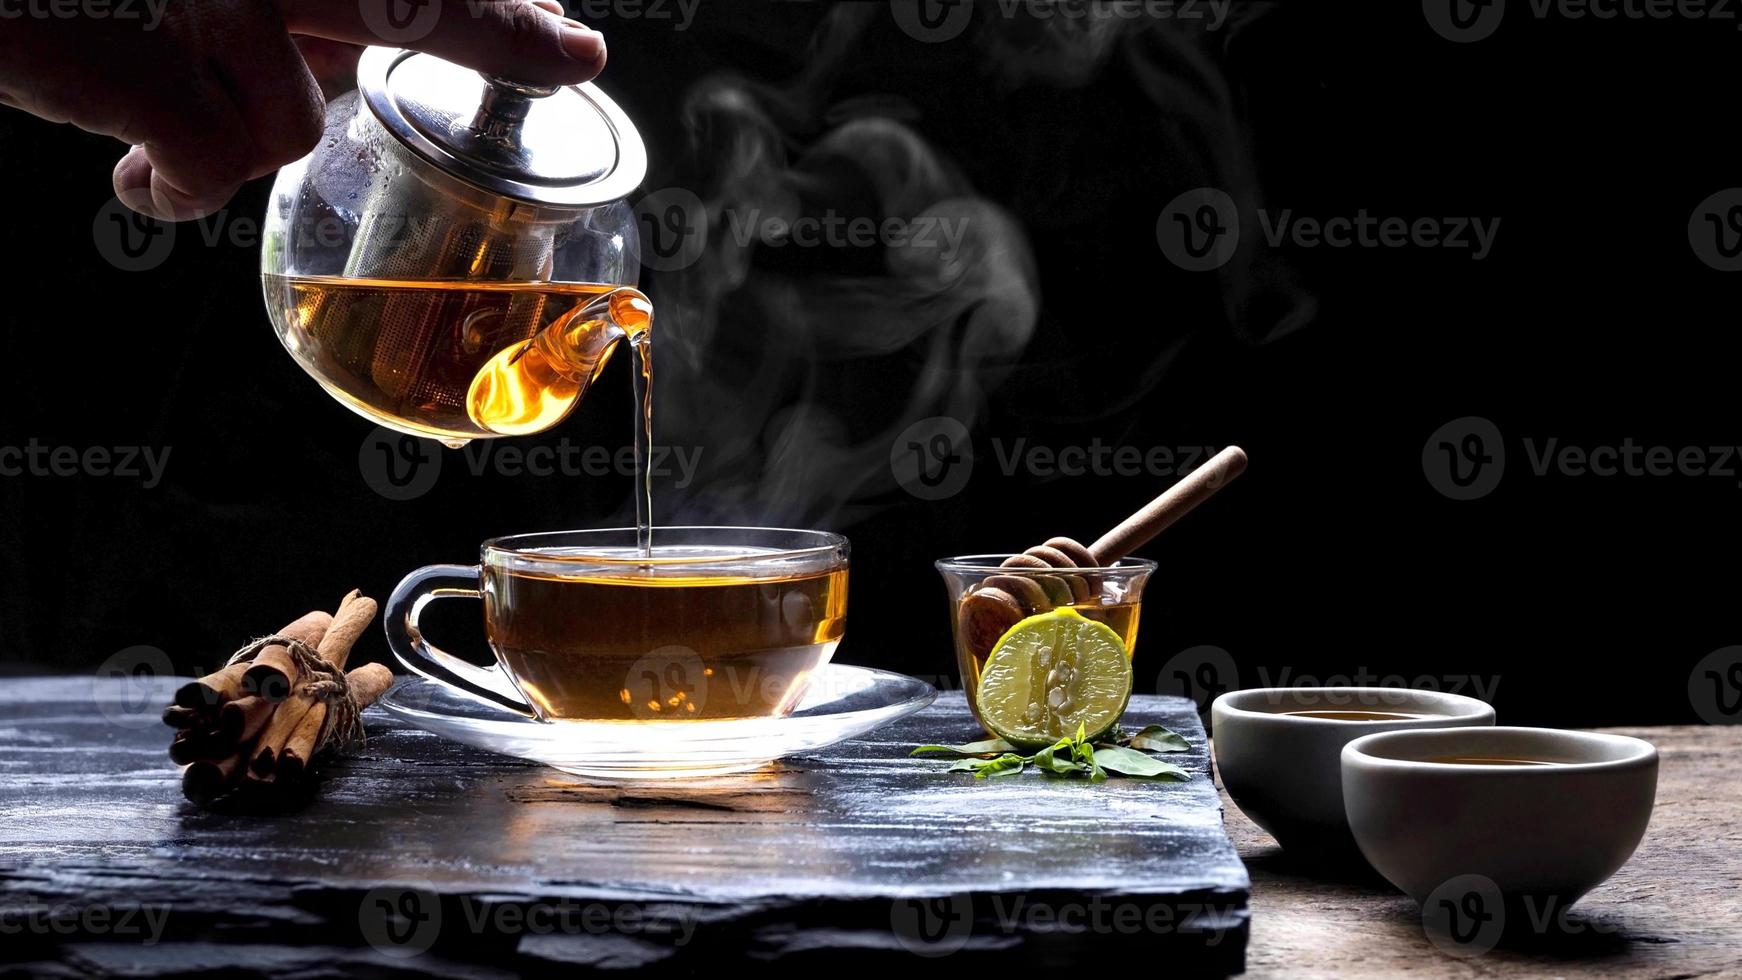 derramando chá de ervas aromáticas quente do bule em xícara de chá de vidro com vapor e várias ervas na placa de pedra preta com piso de mesa de madeira em fundo escuro, foco seletivo foto